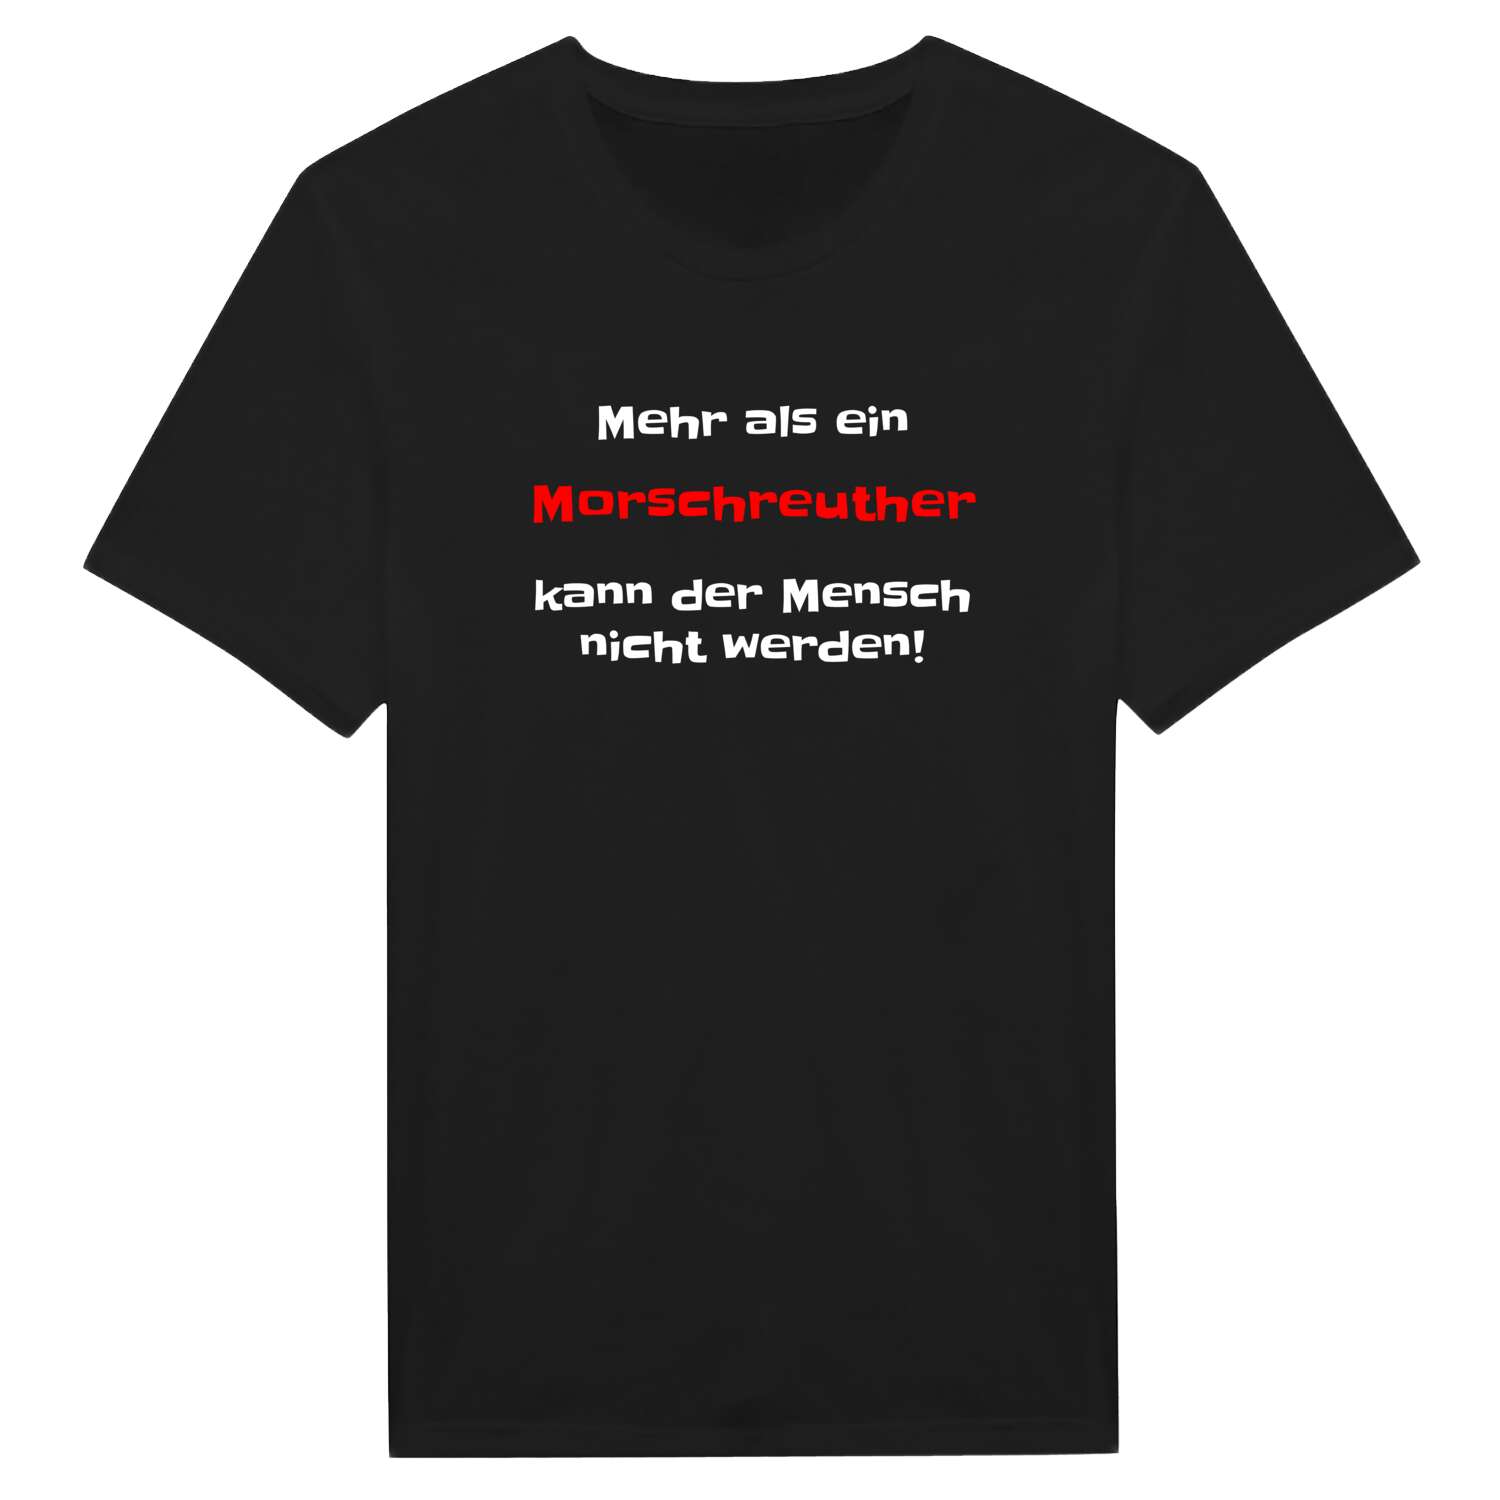 Morschreuth T-Shirt »Mehr als ein«